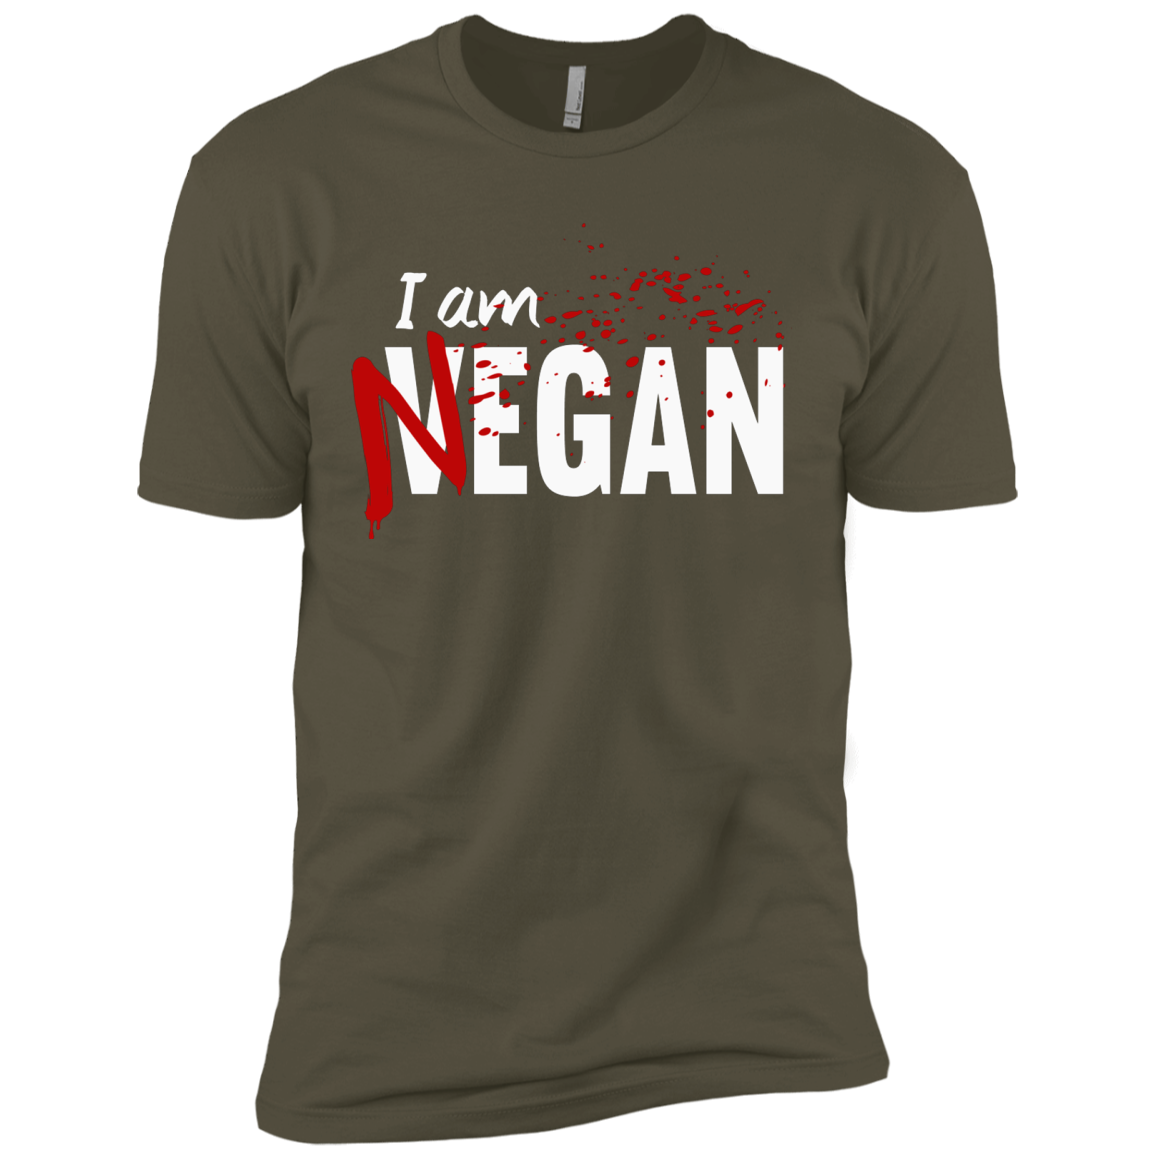 I'm Negan Men's Premium T-Shirt